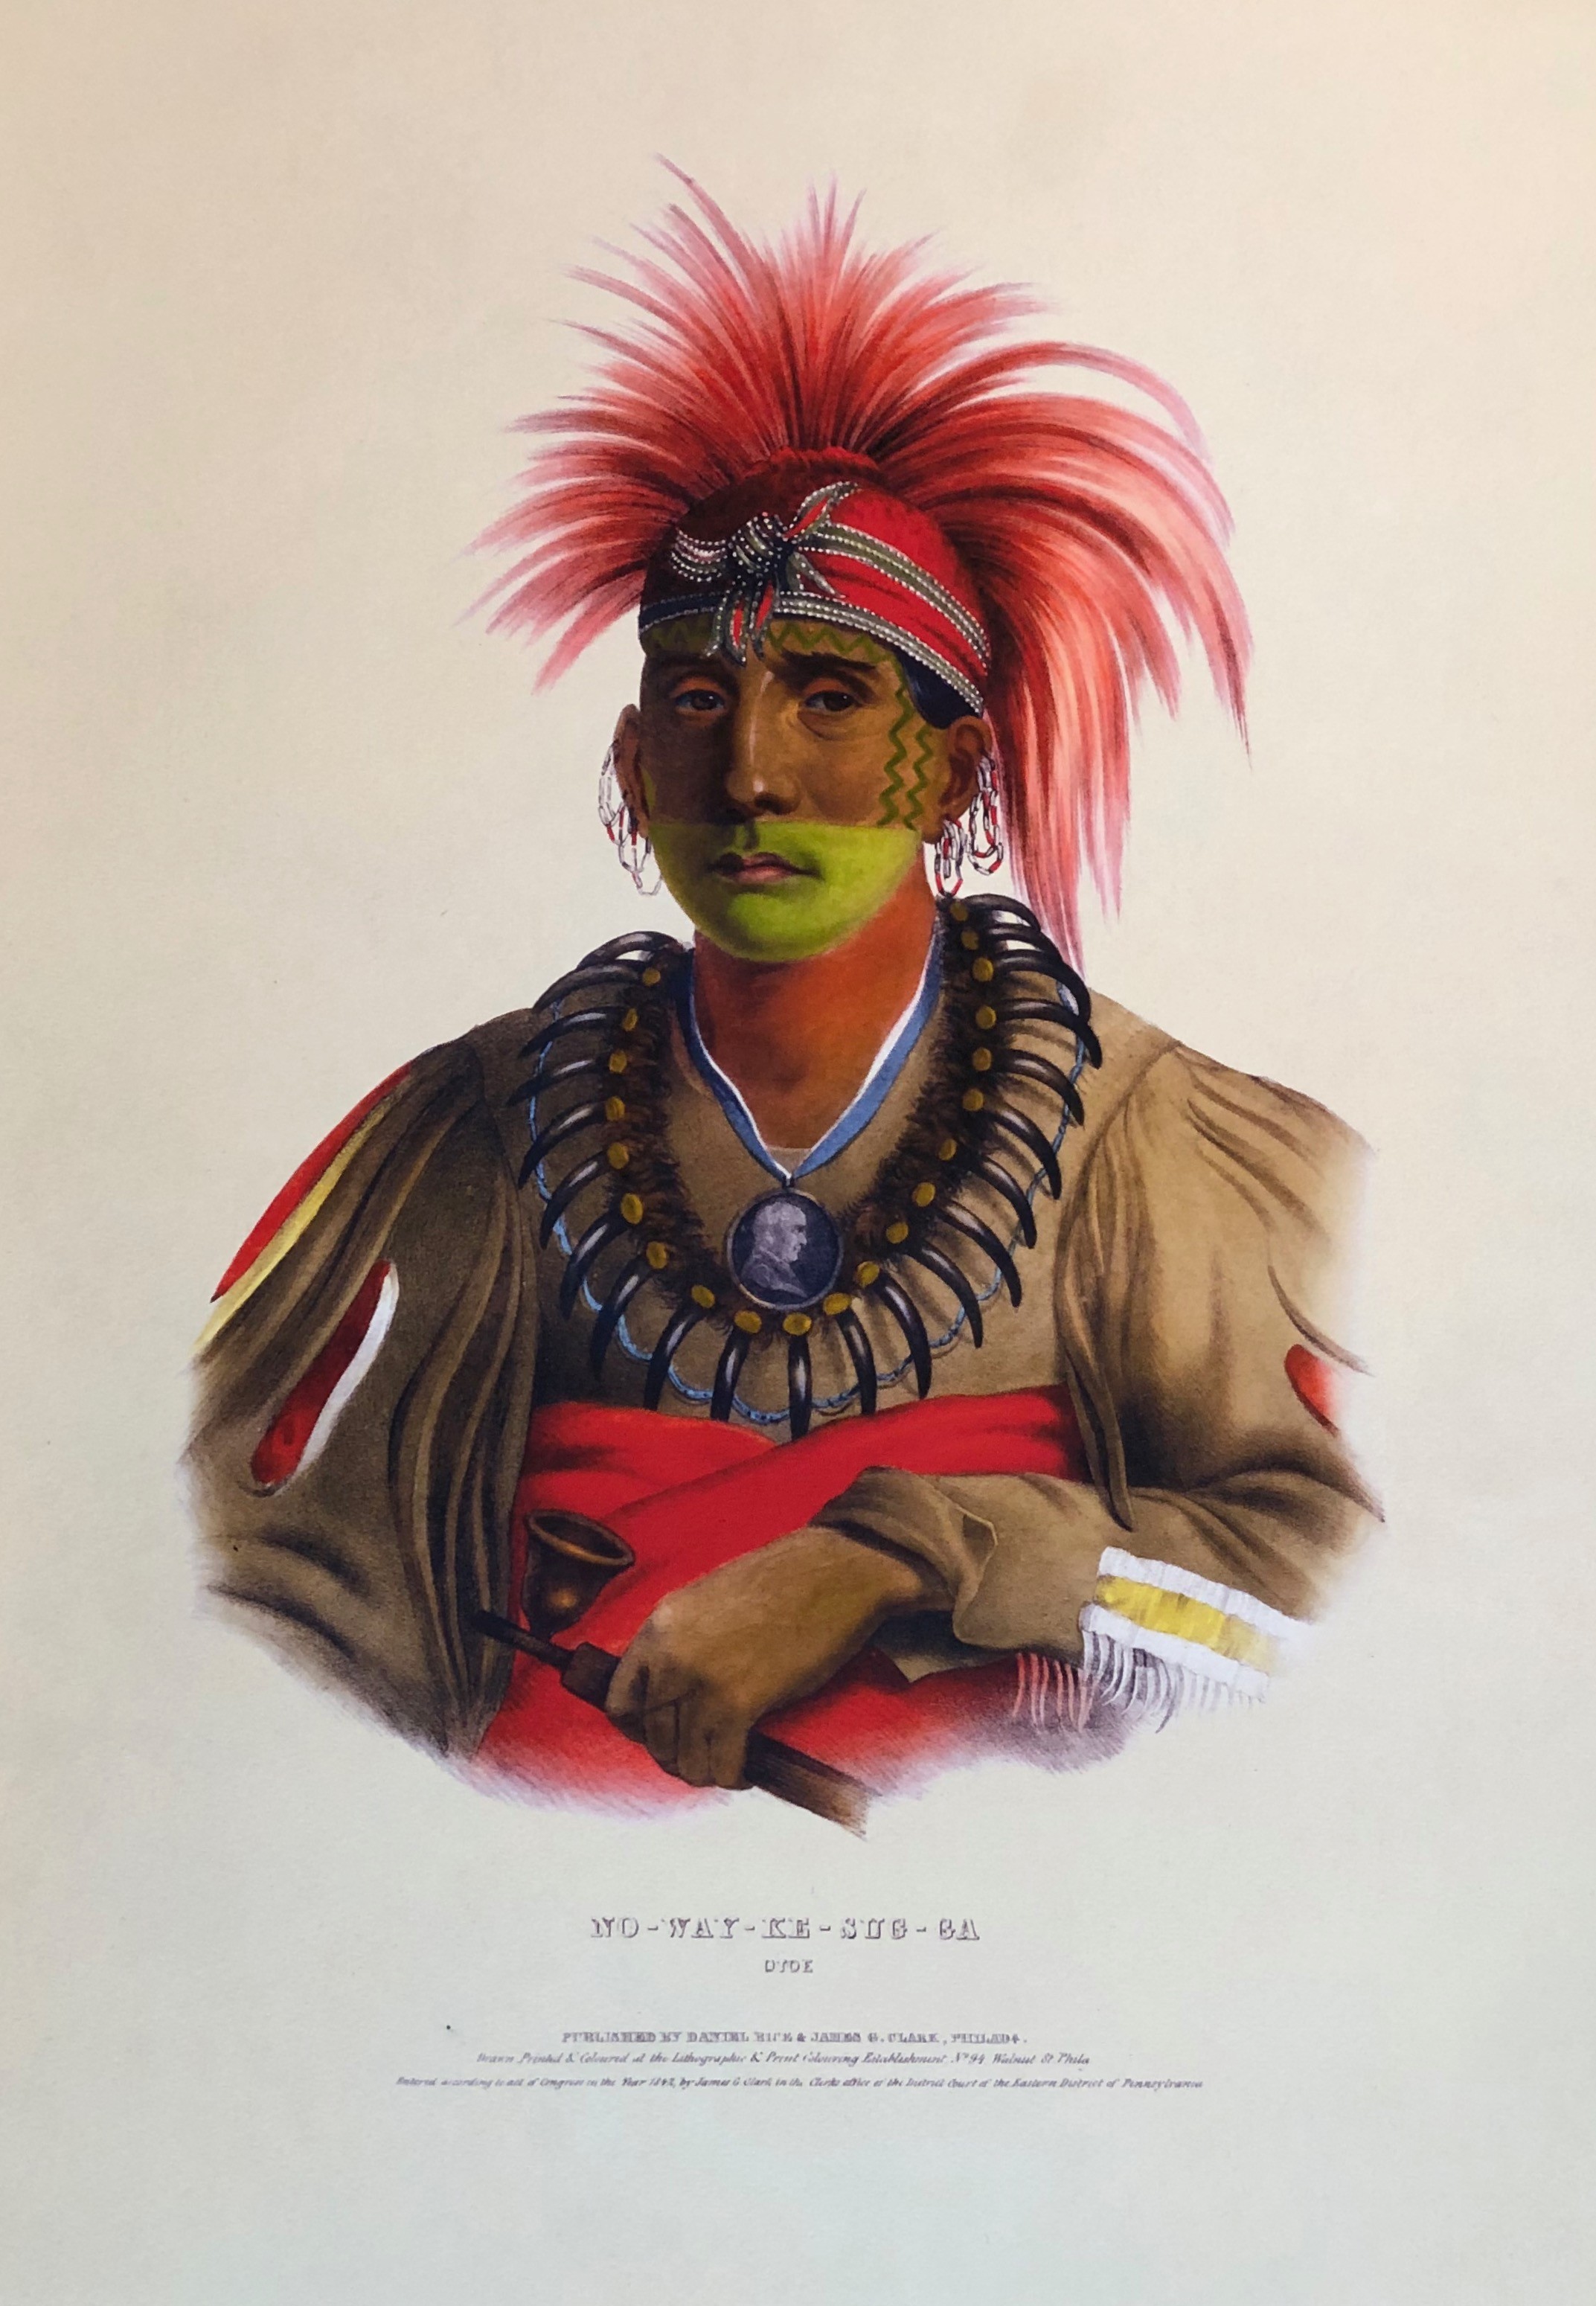 No-Way-Ke-Sug-Ga, An Otoe Chief